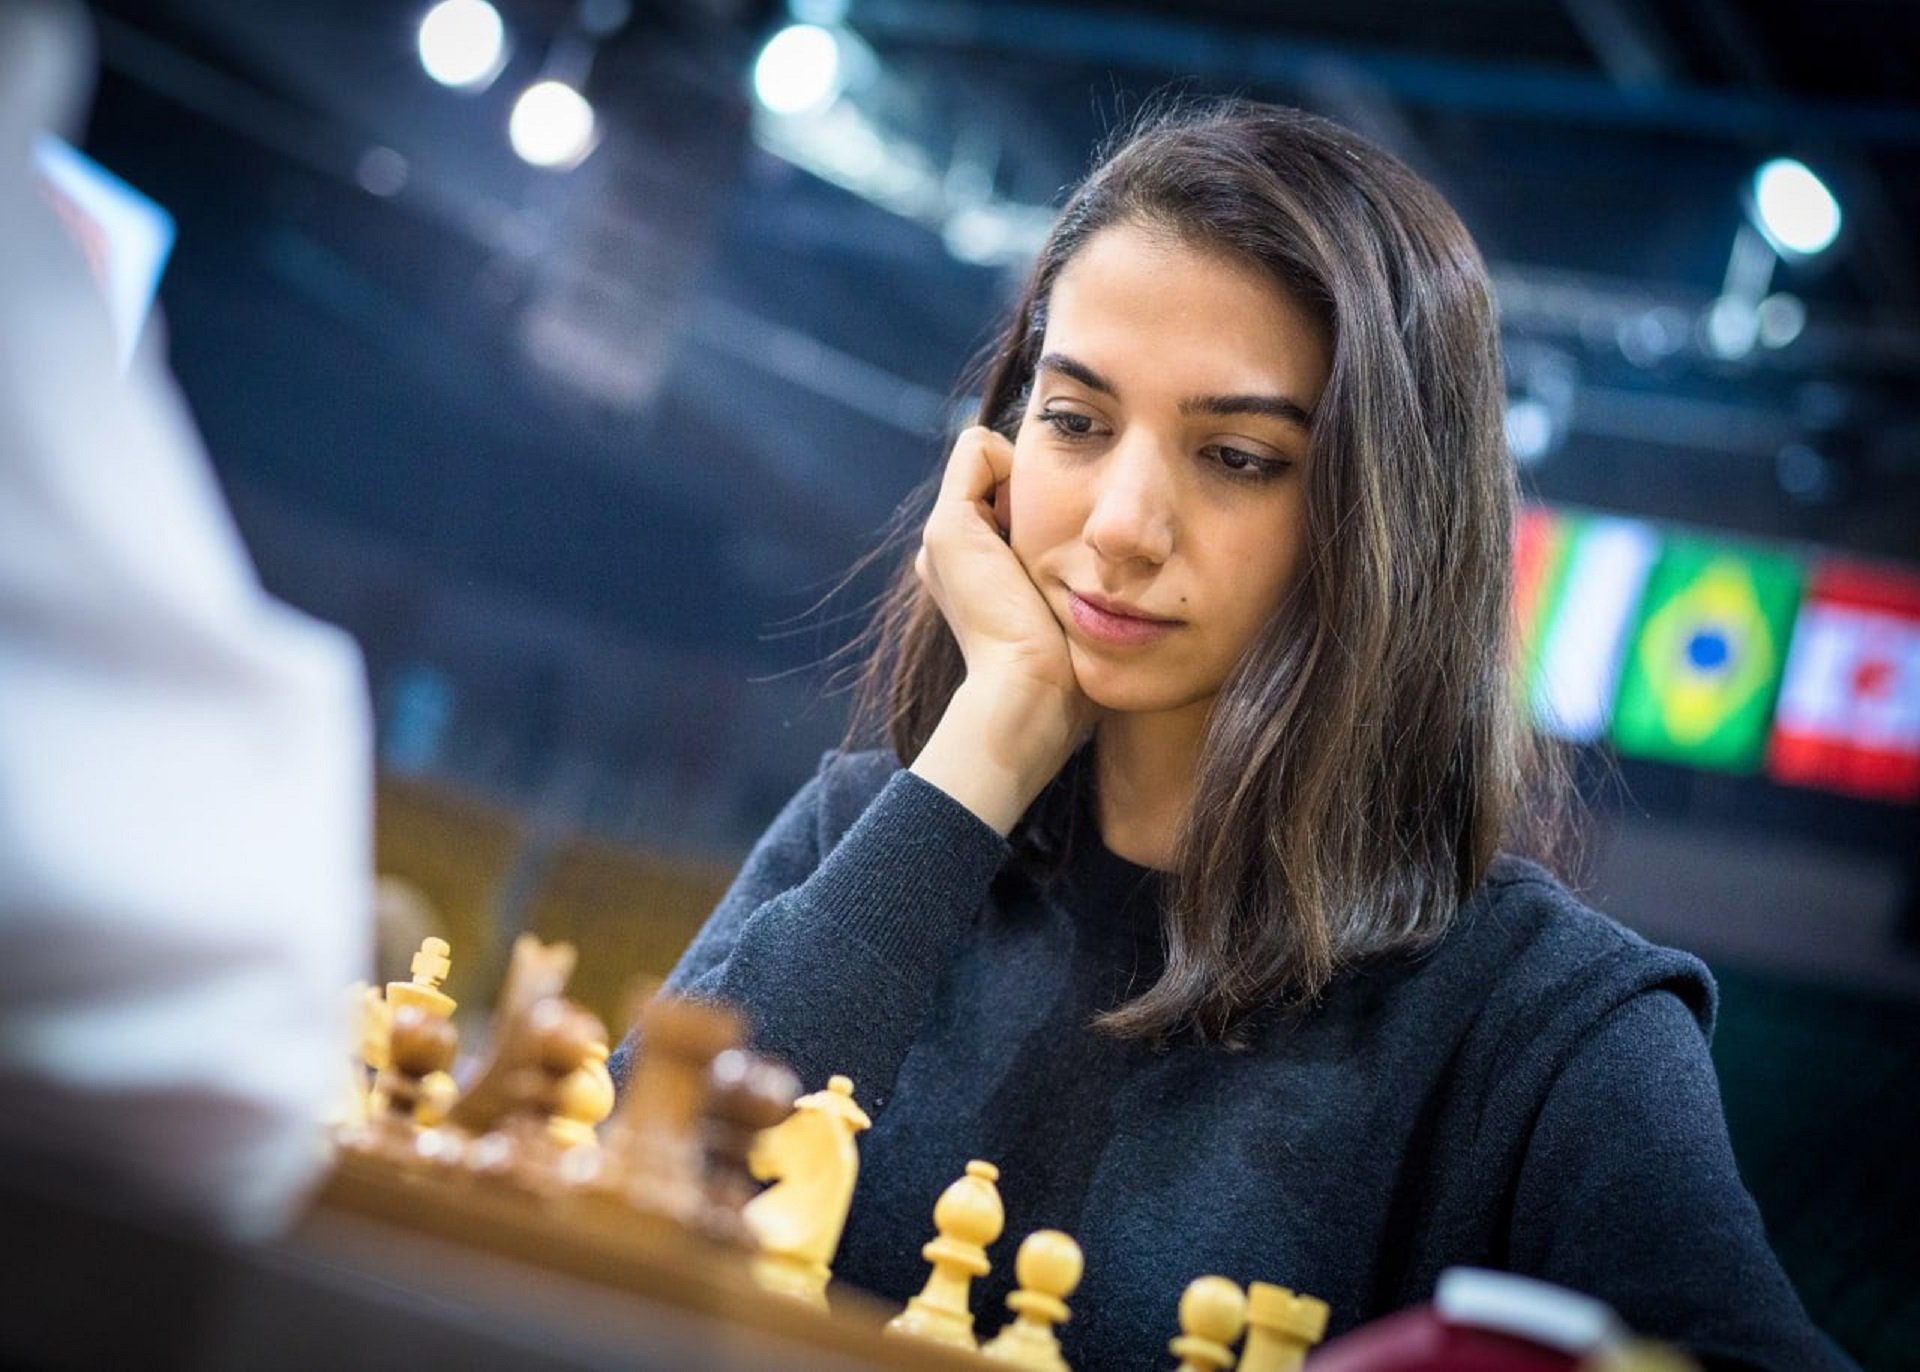 La jugadora de ajedrez iraní Sara Khadem desafía al régimen y compite sin velo en el Mundial